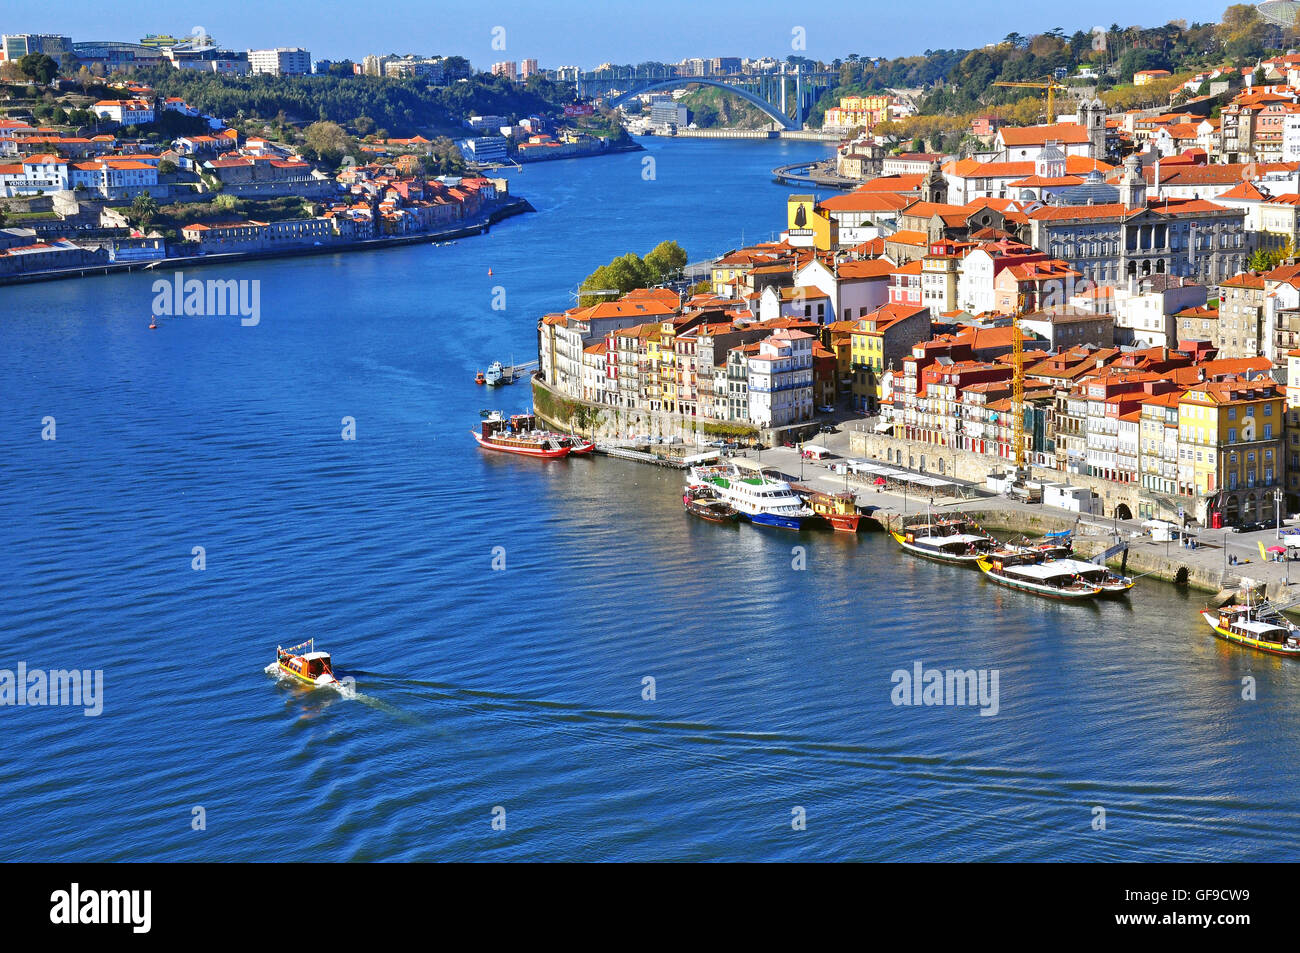 PORTO, Portogallo - 27 novembre: vista panoramica del centro cittadino di Porto il 27 novembre 2013. Il porto è una delle più antiche comunità cen Foto Stock